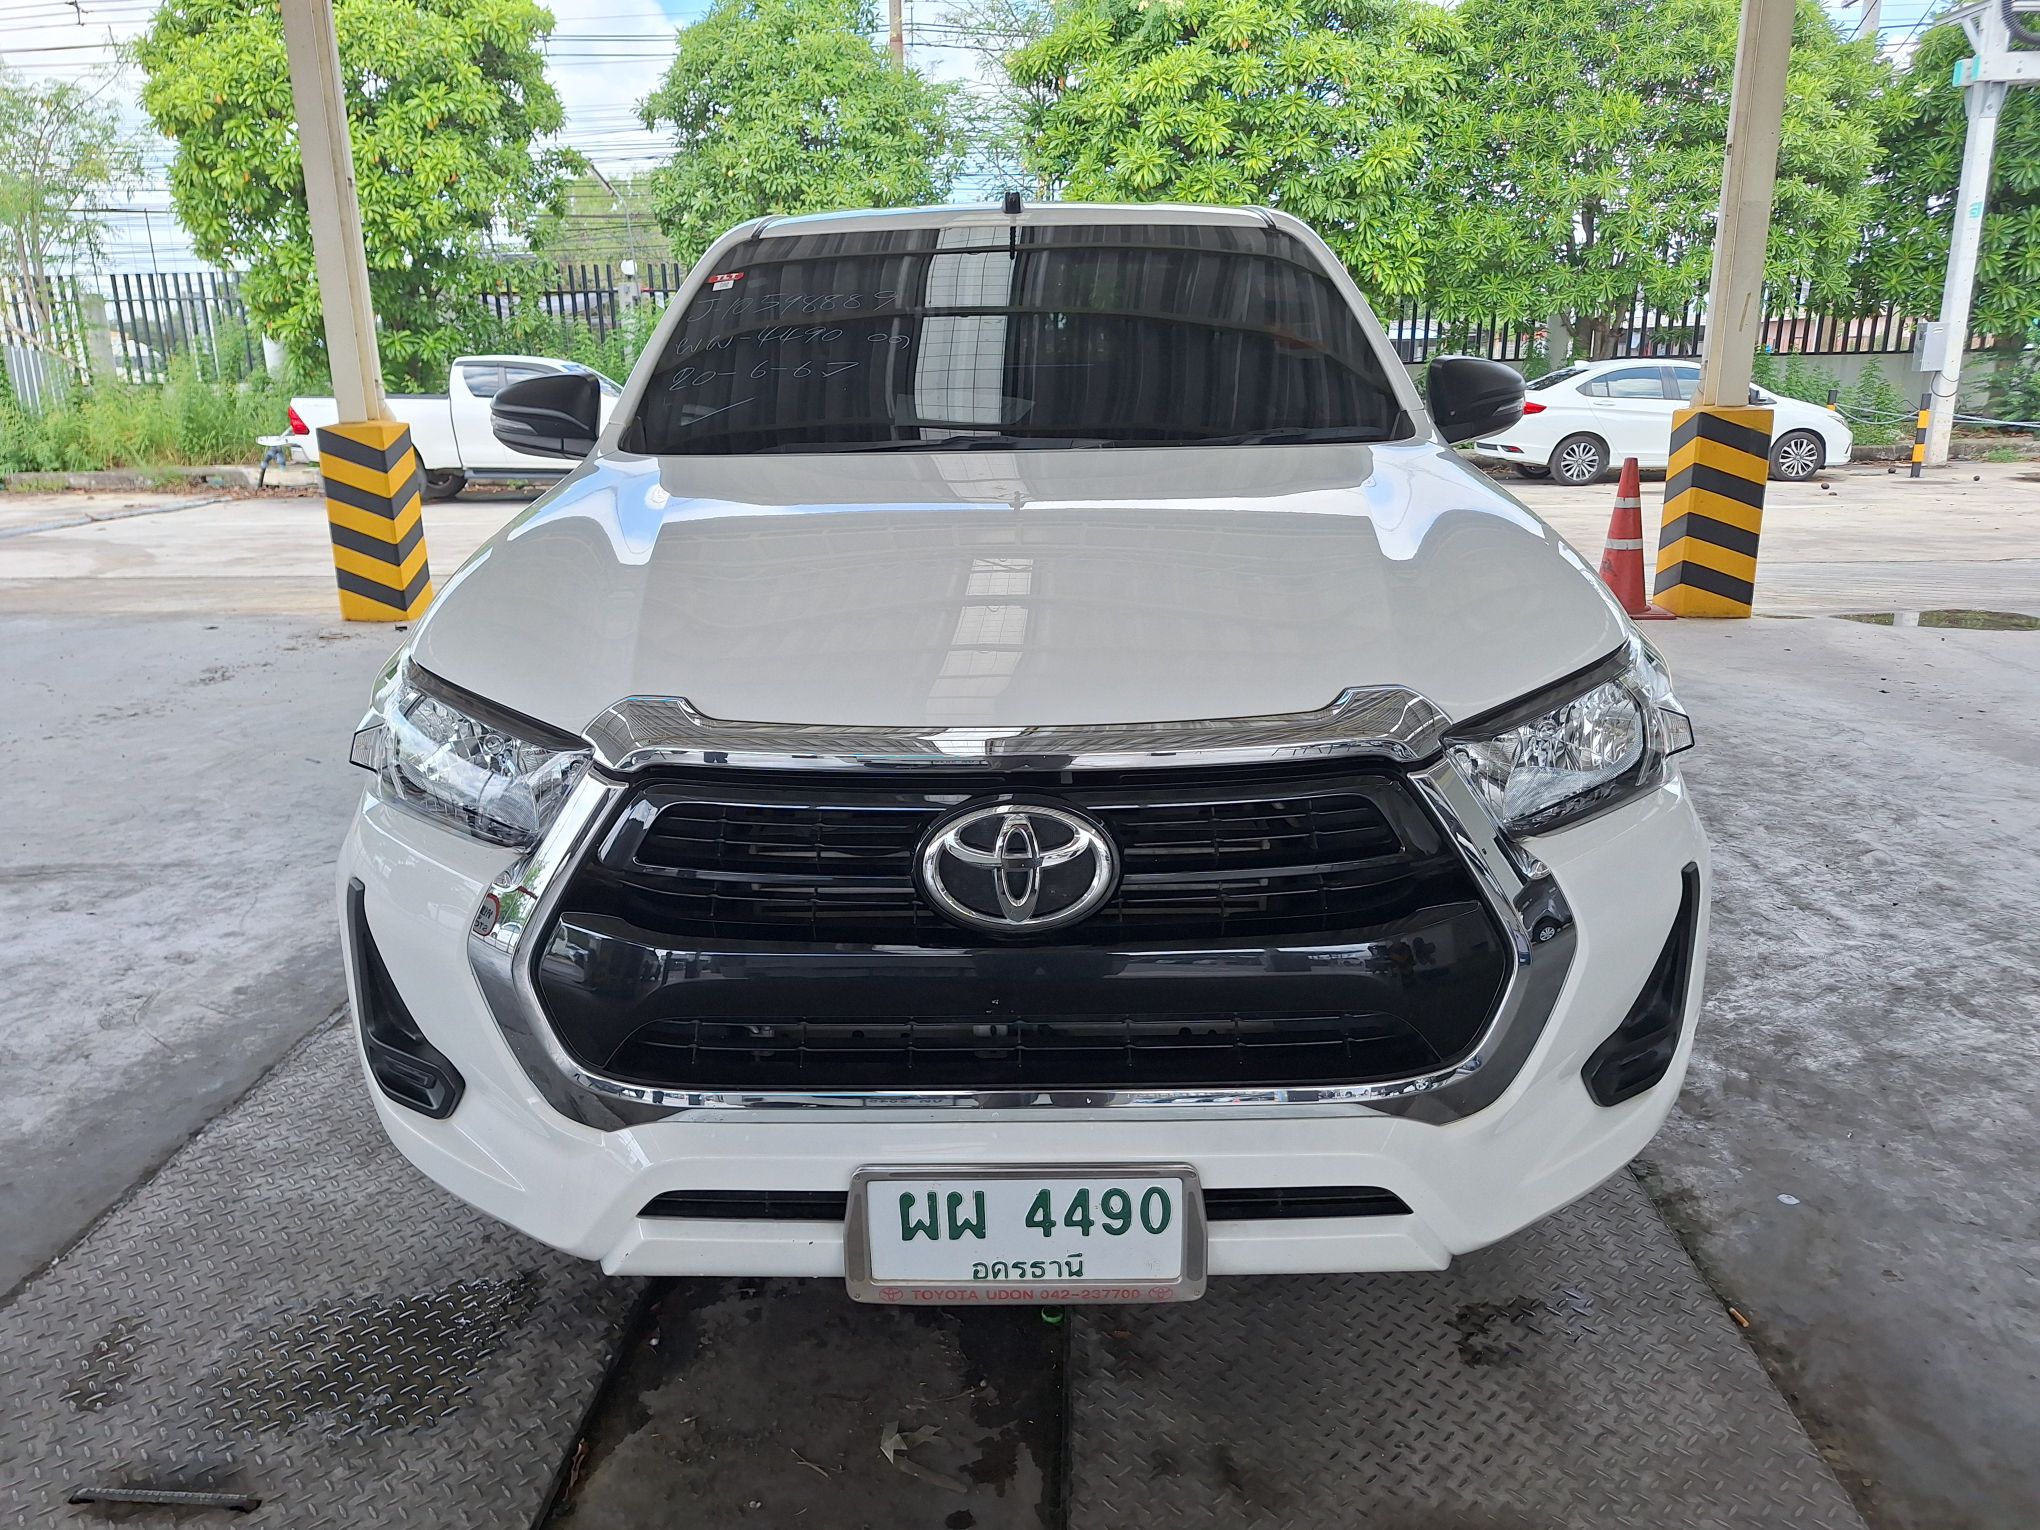 2022 - Toyota Hilux Revo Z Edition Entry Smart Cab MT RWD 2.4